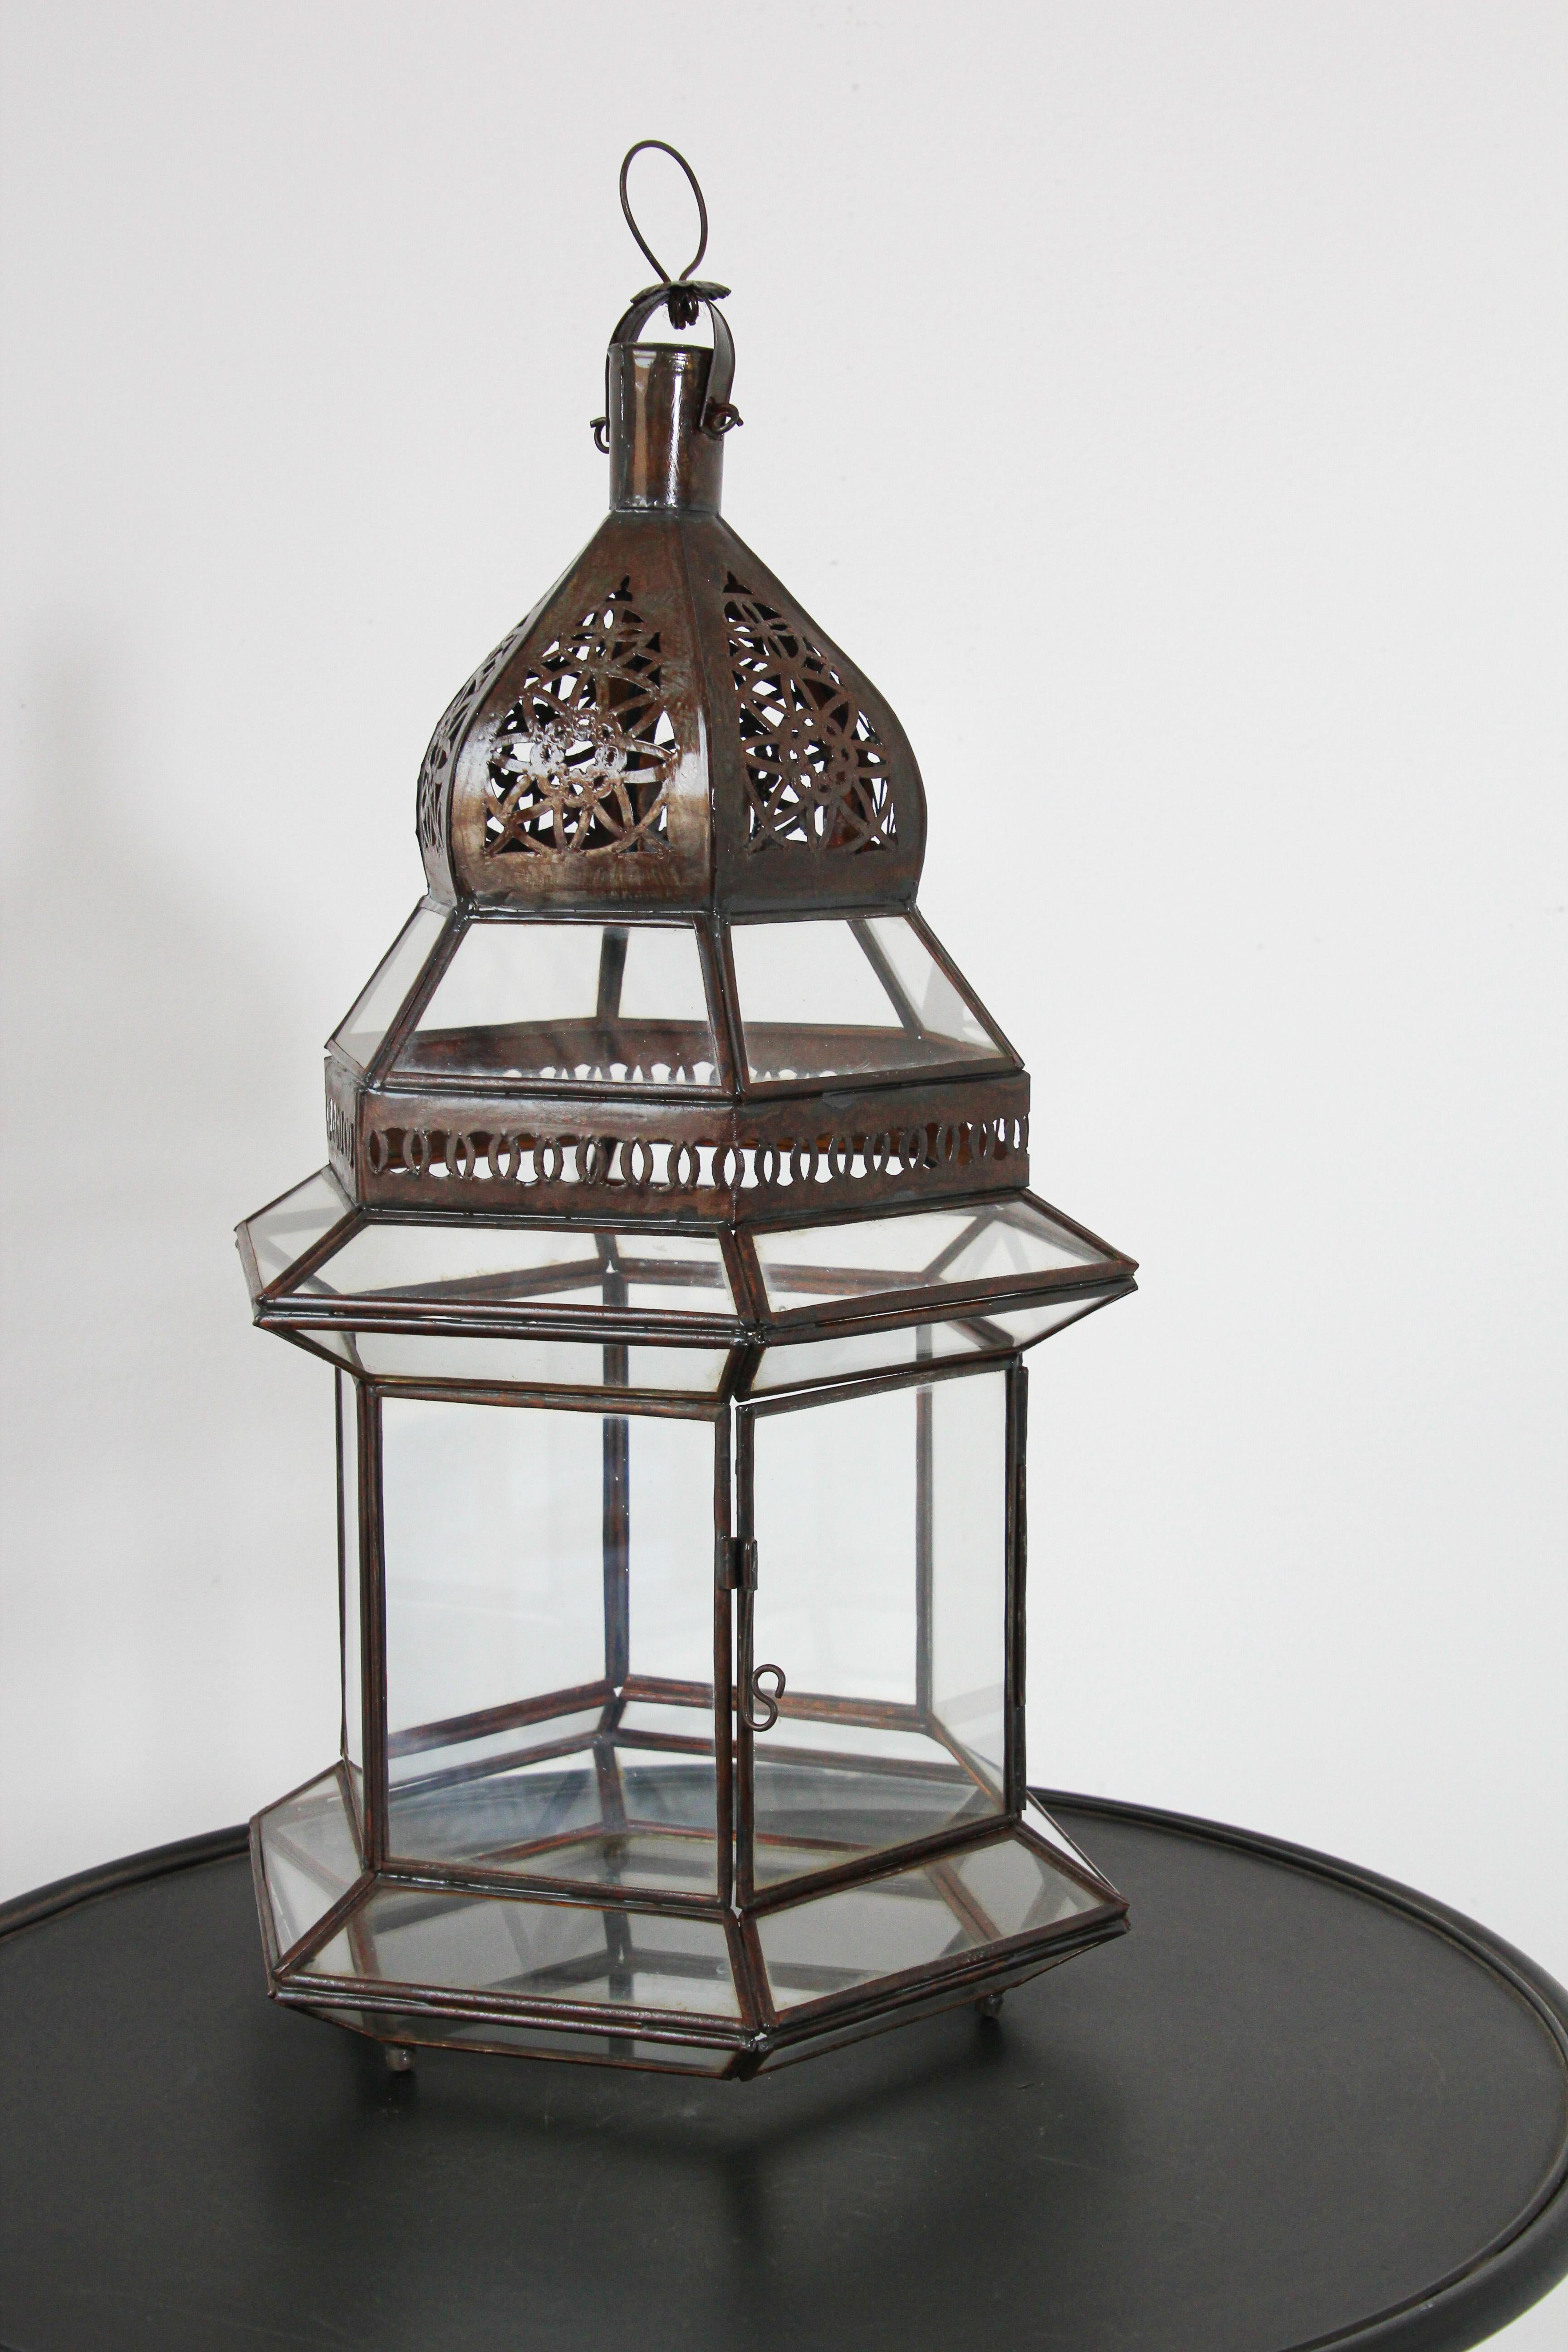 Grandes lanternes marocaines en métal et verre transparent.Lampe à bougie ouragan de forme hexagonale avec une finition métallique de couleur rouille.Le haut de la lanterne est découpé à la main avec des motifs mauresques.La lanterne a une petite